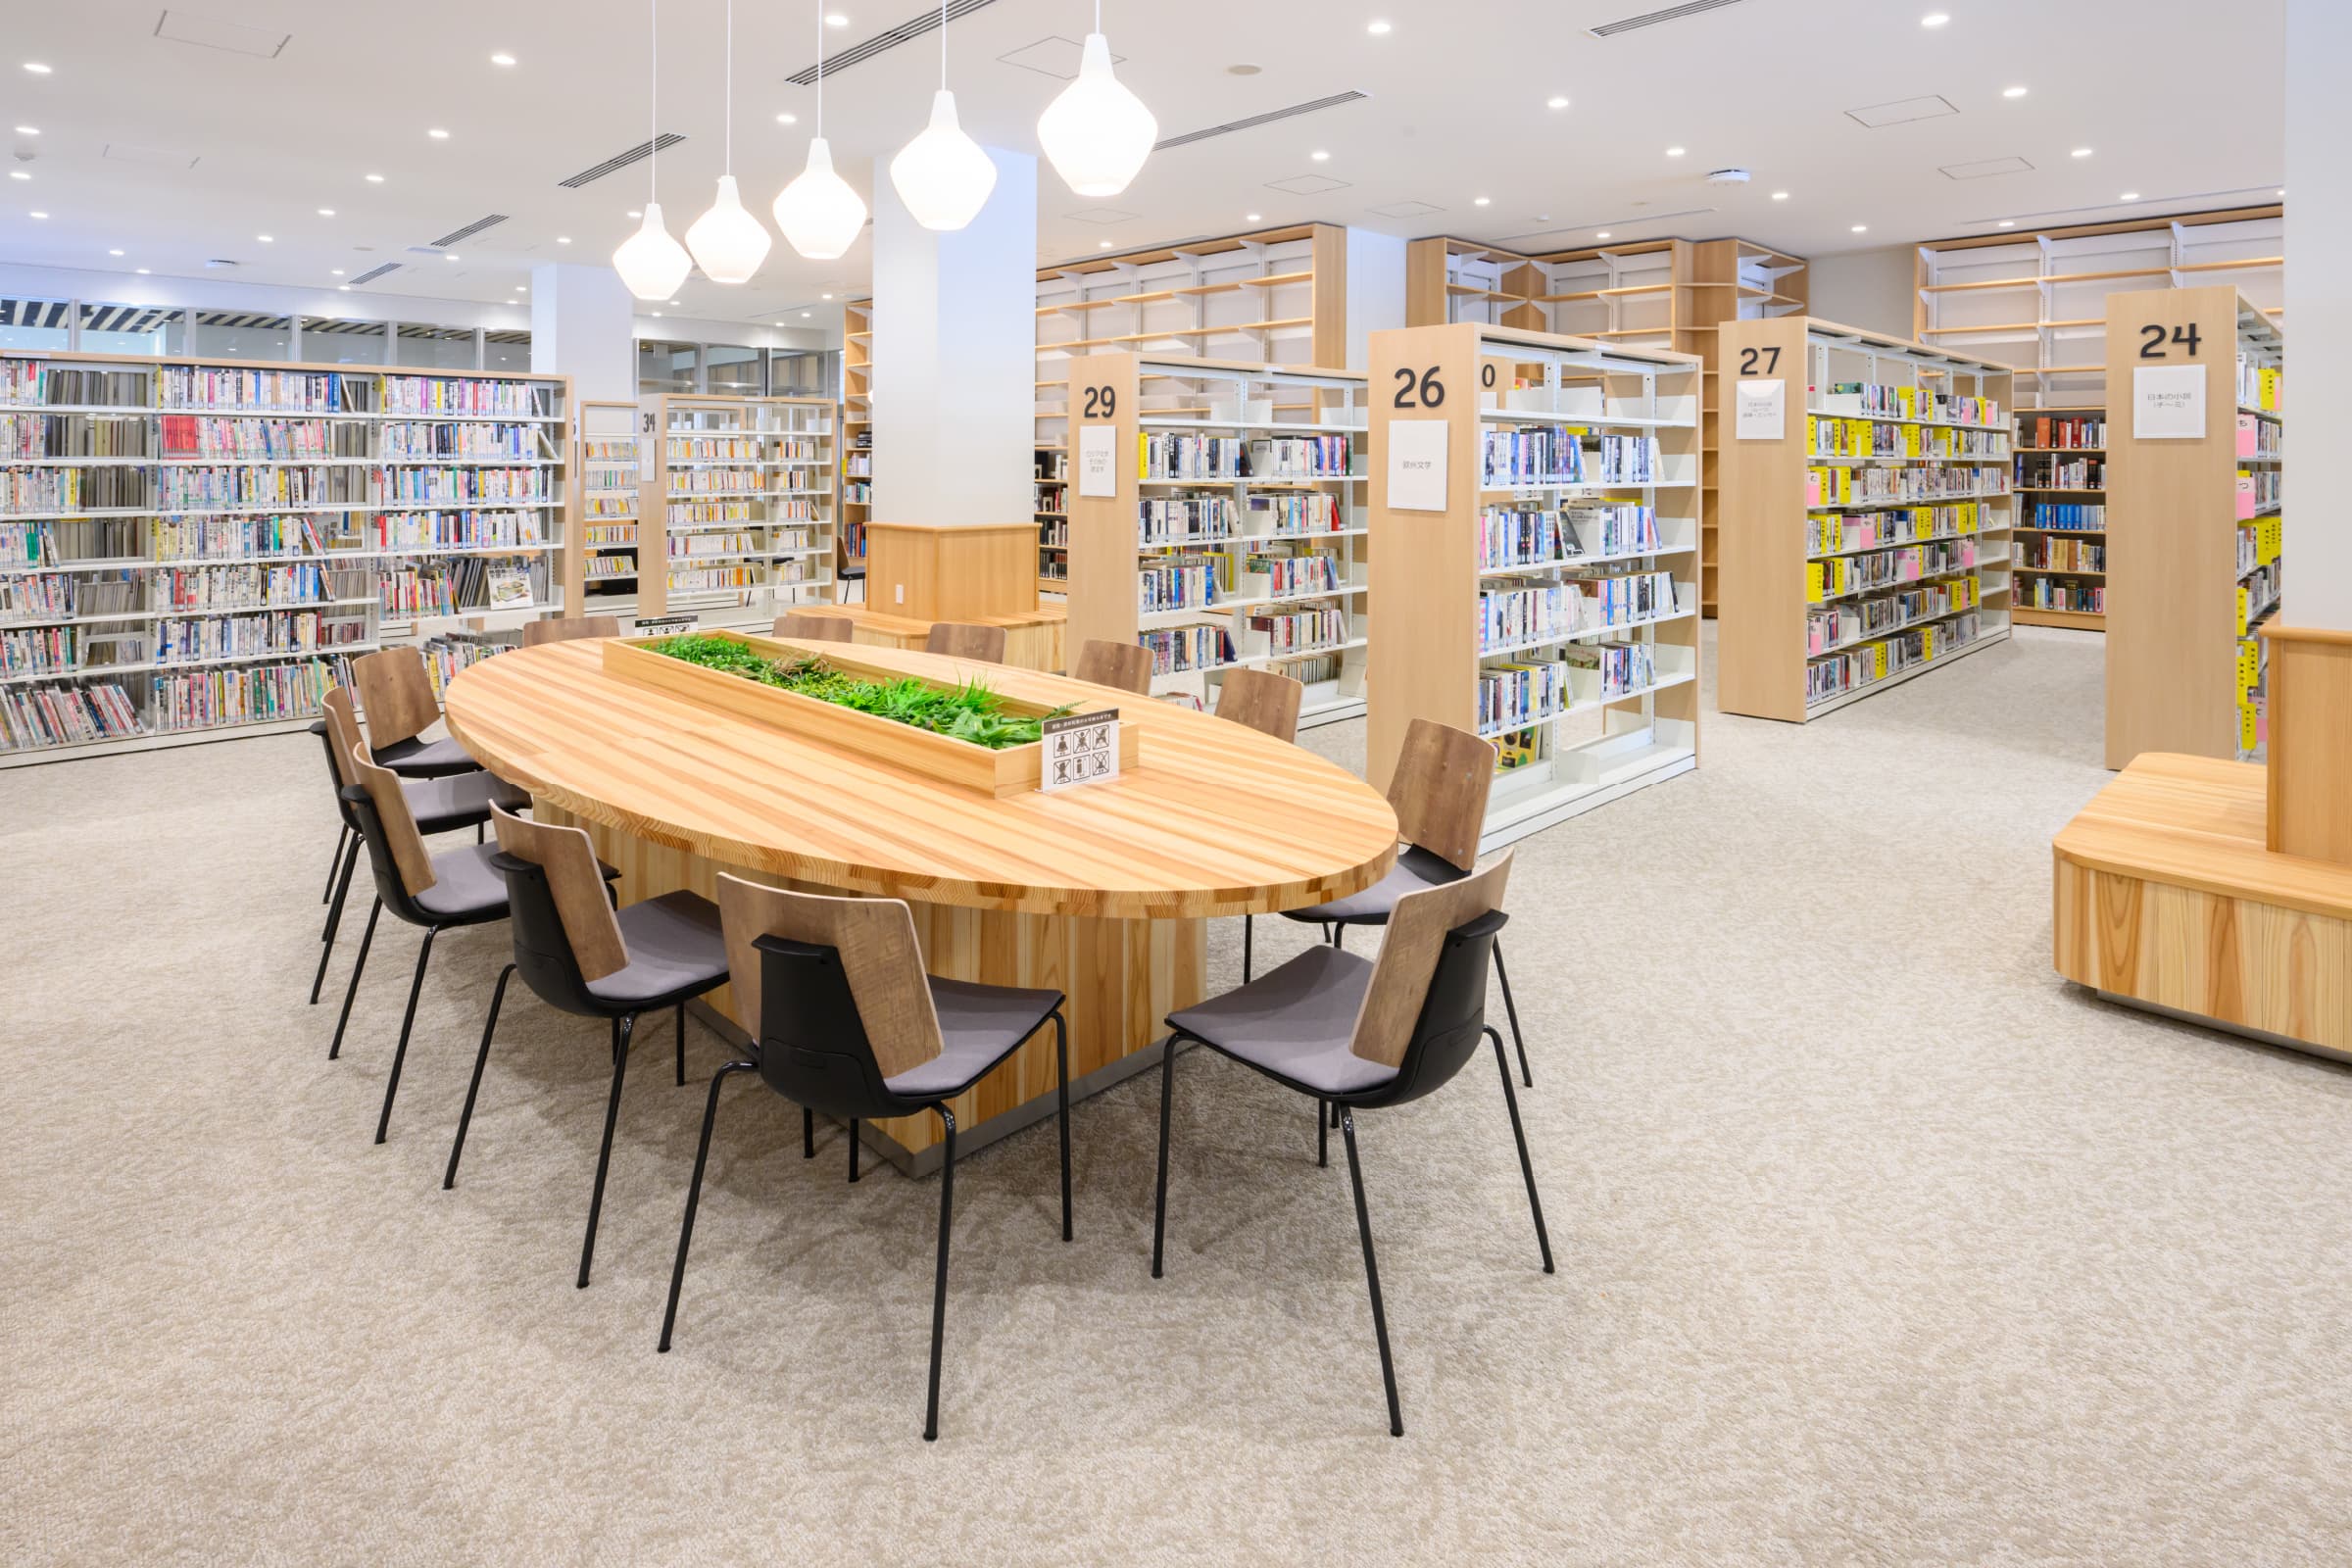 図書館／大型テーブル・柱巻きベンチは建築工事にて対応。木のぬくもりが感じられ、温かみを感じられる。